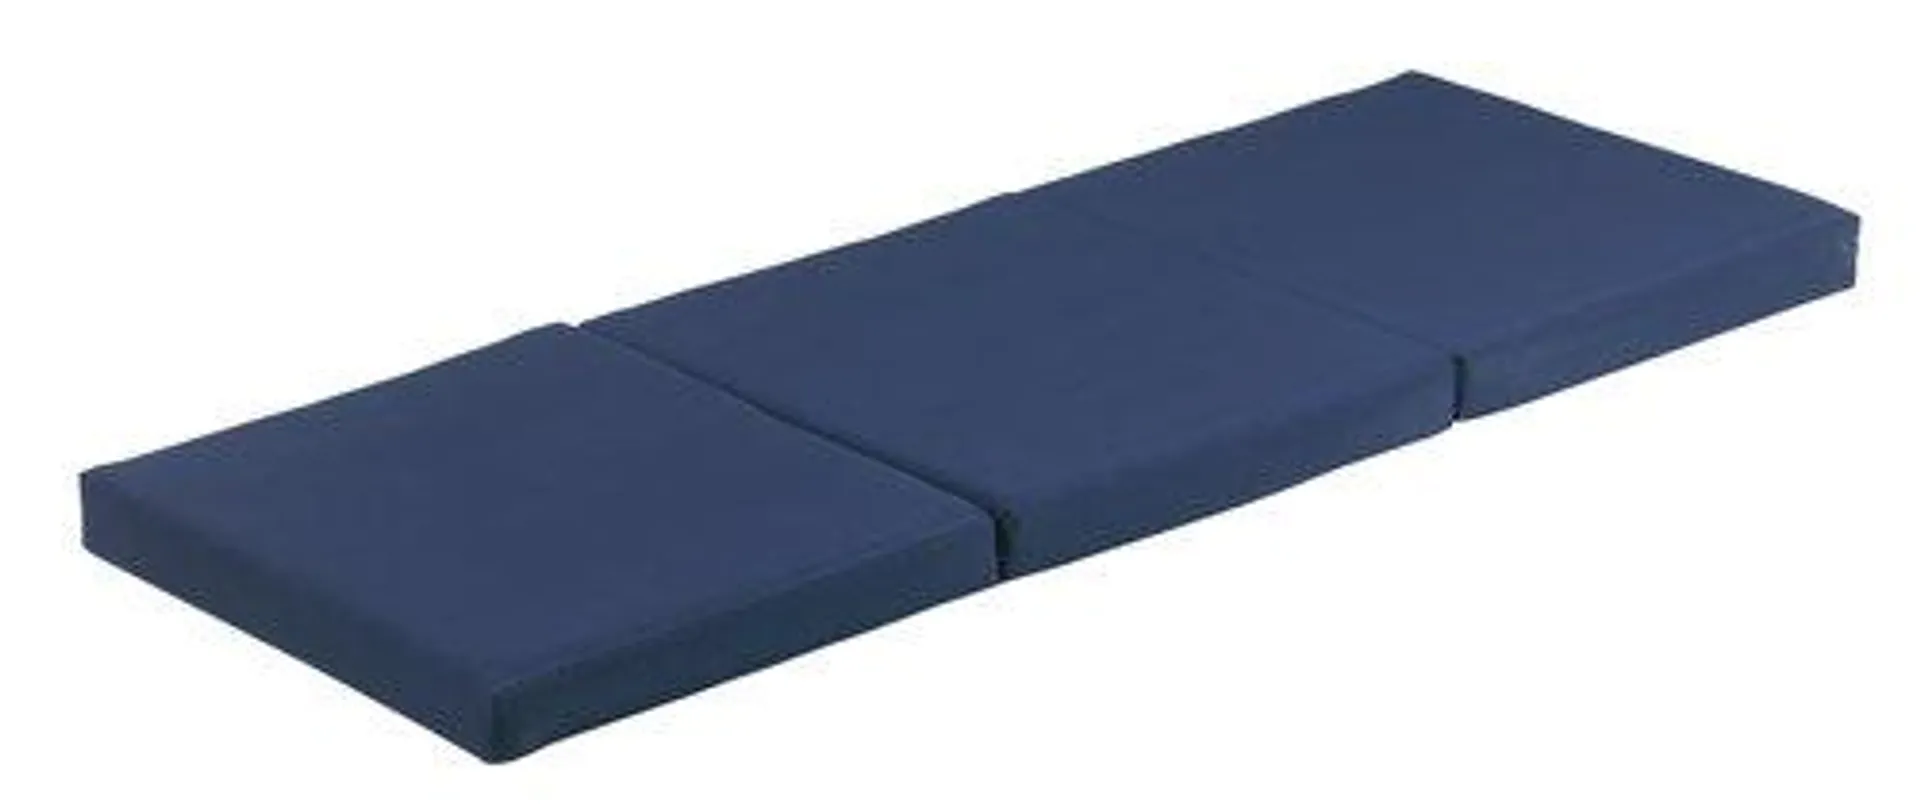 Összehajtható habszivacs matrac 70x190 PLUS F10